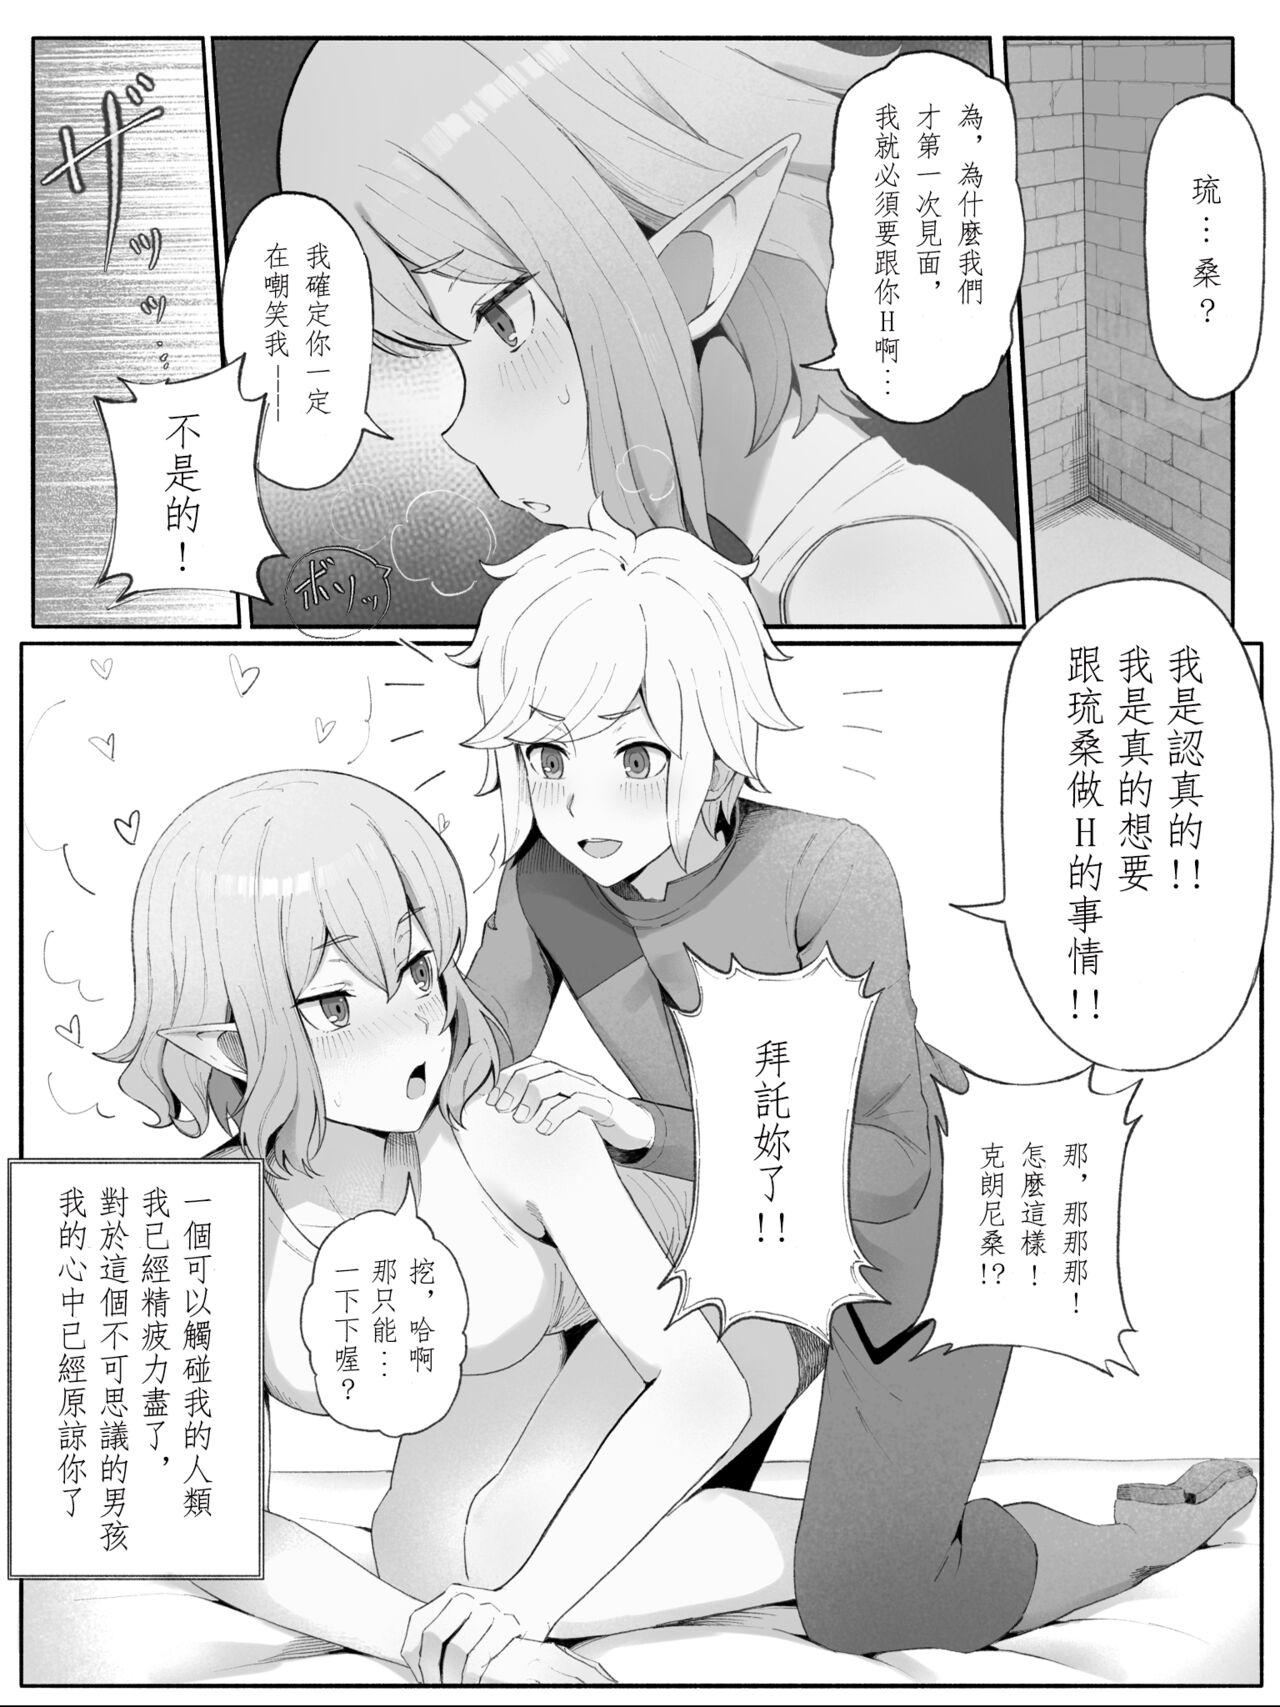 Swallowing Bell Ryuu Ecchi na Manga - Dungeon ni deai o motomeru no wa machigatteiru darou ka Amatuer Sex - Page 8